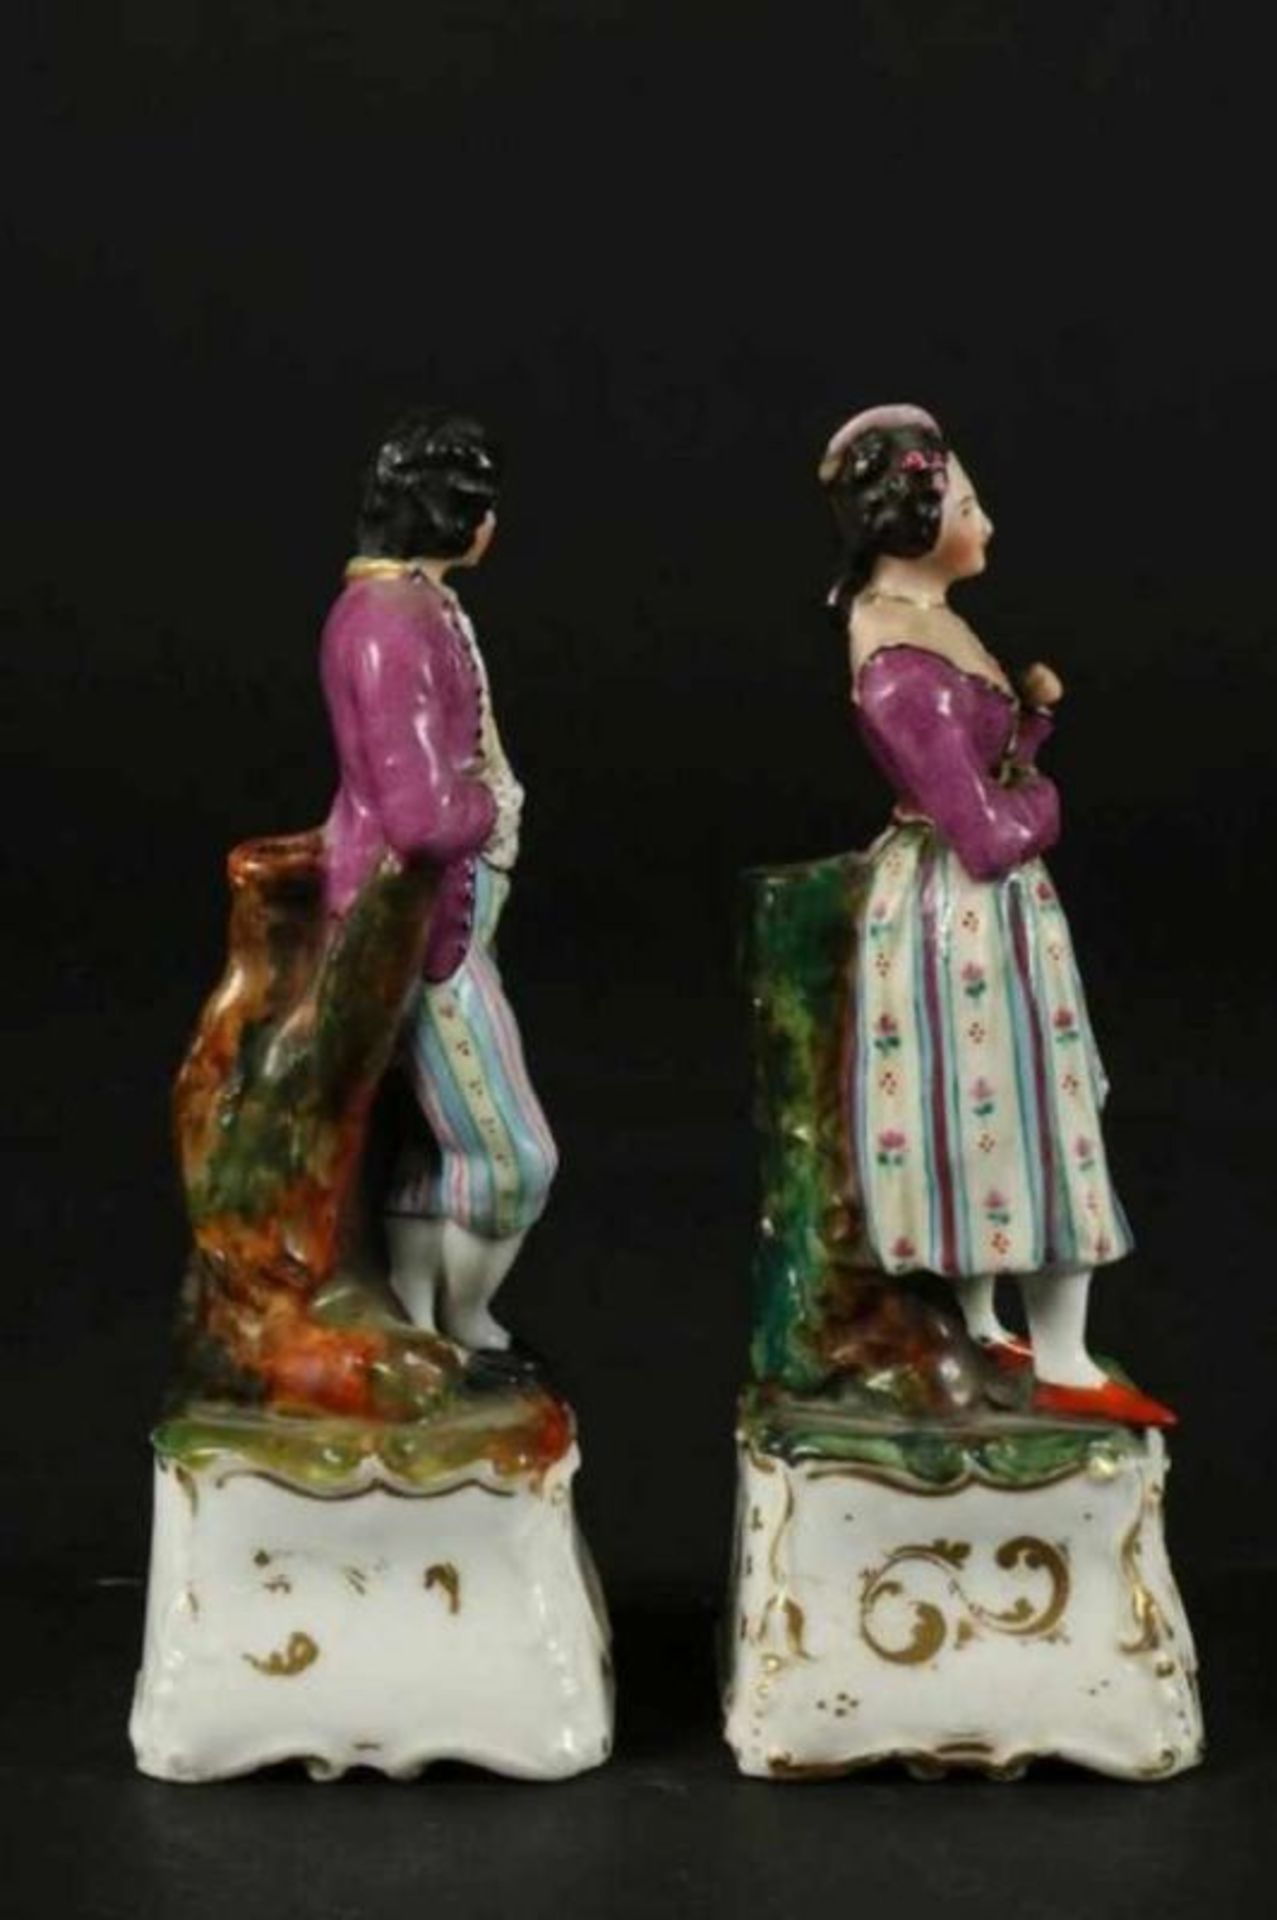 Stel porseleinen likeurflesjes als echtpaar, Duitsland 19e eeuw, h. 19 cm. - Bild 2 aus 4